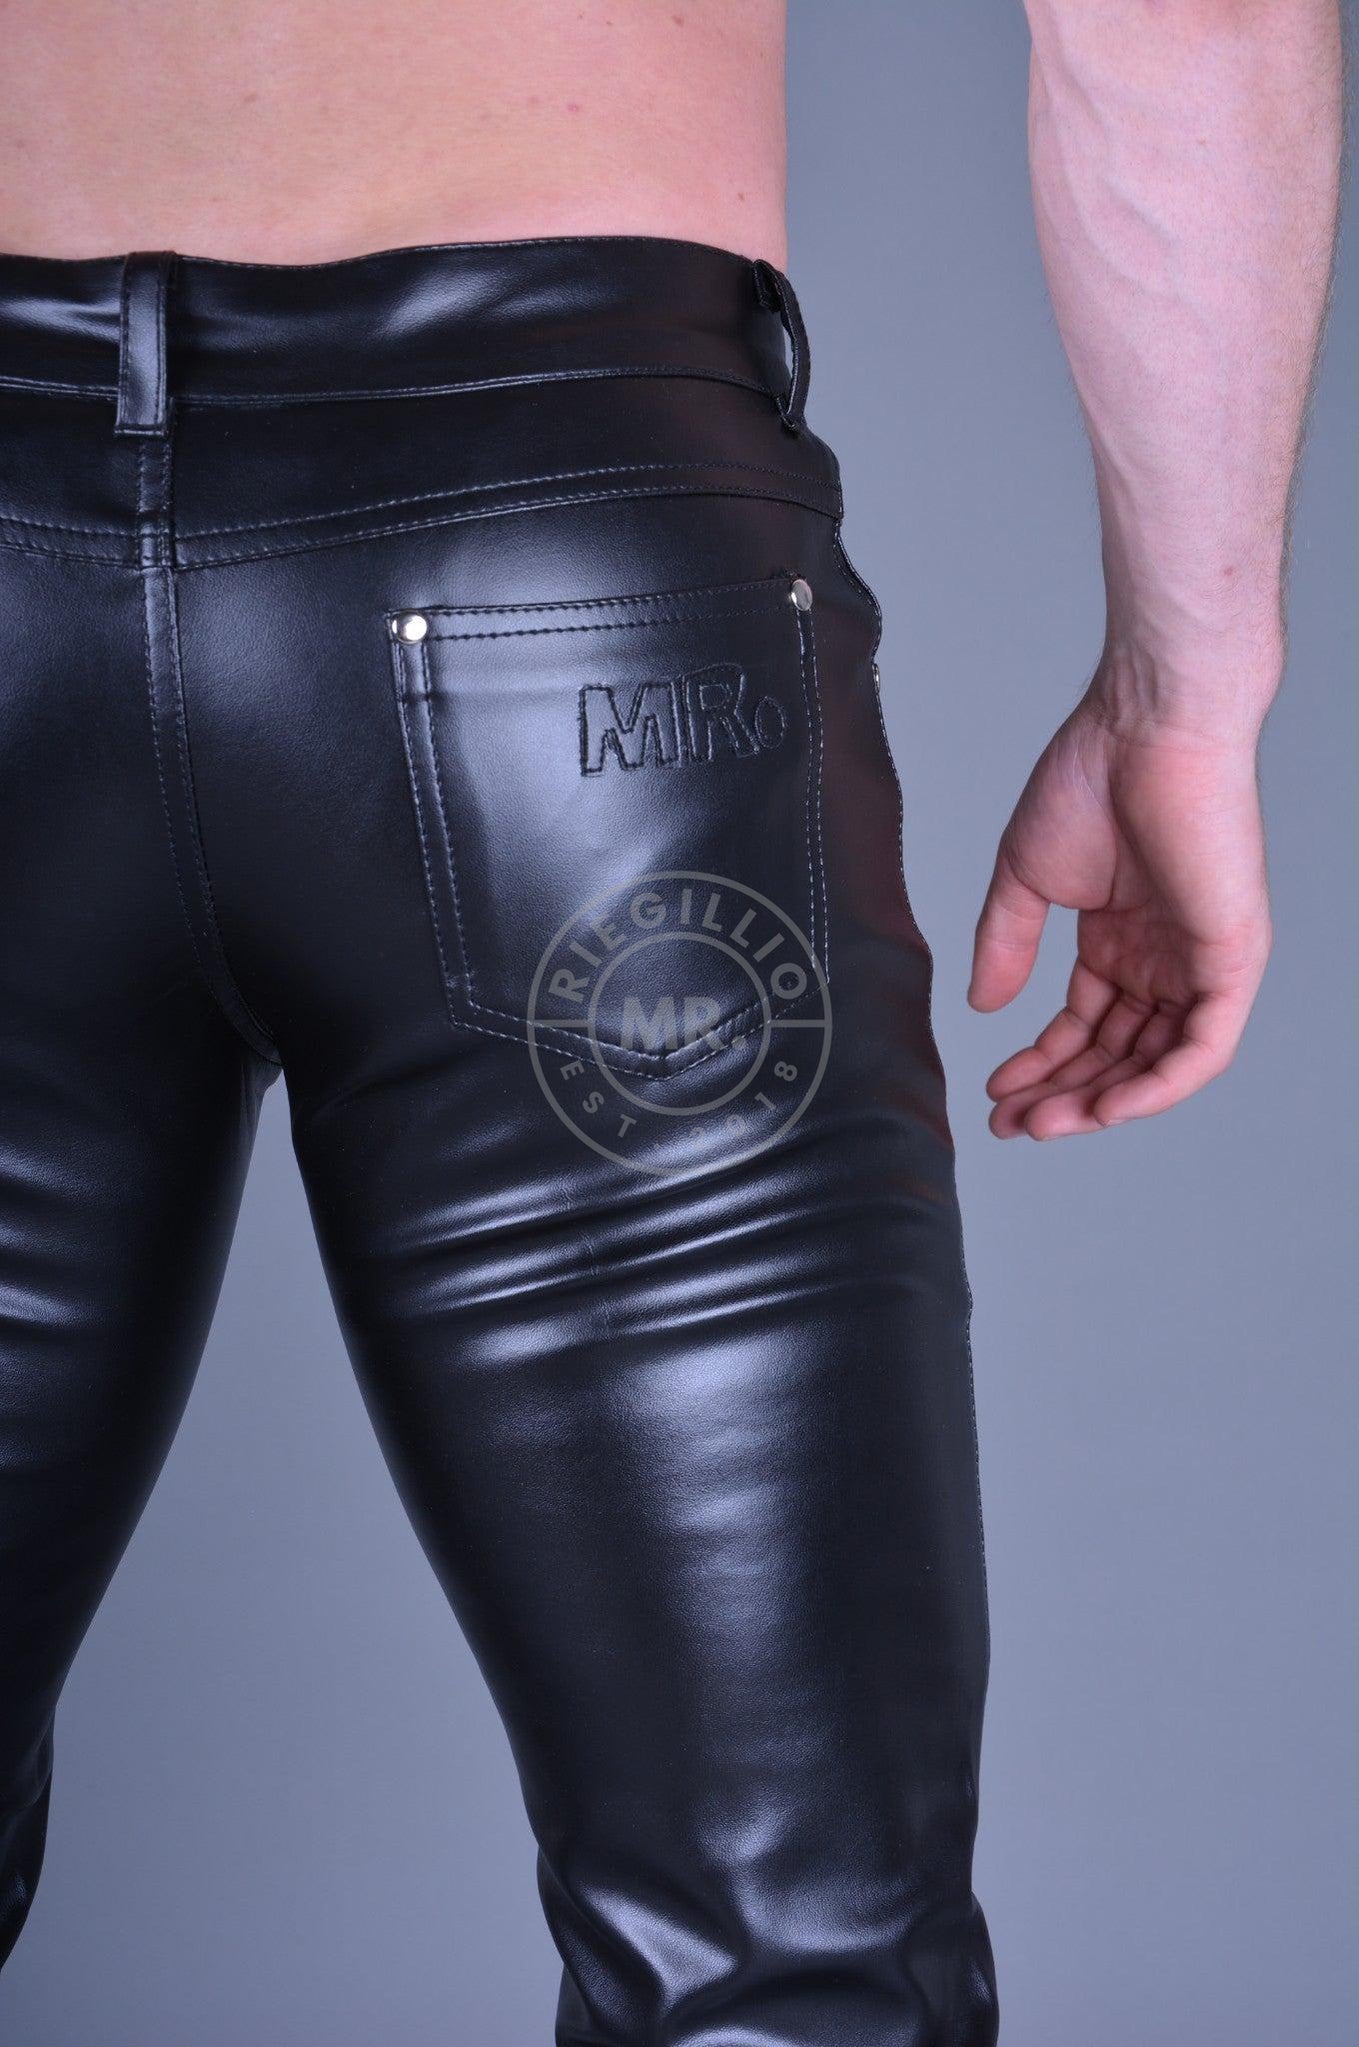 MR. 5-Pocket Pants black at MR. Riegillio